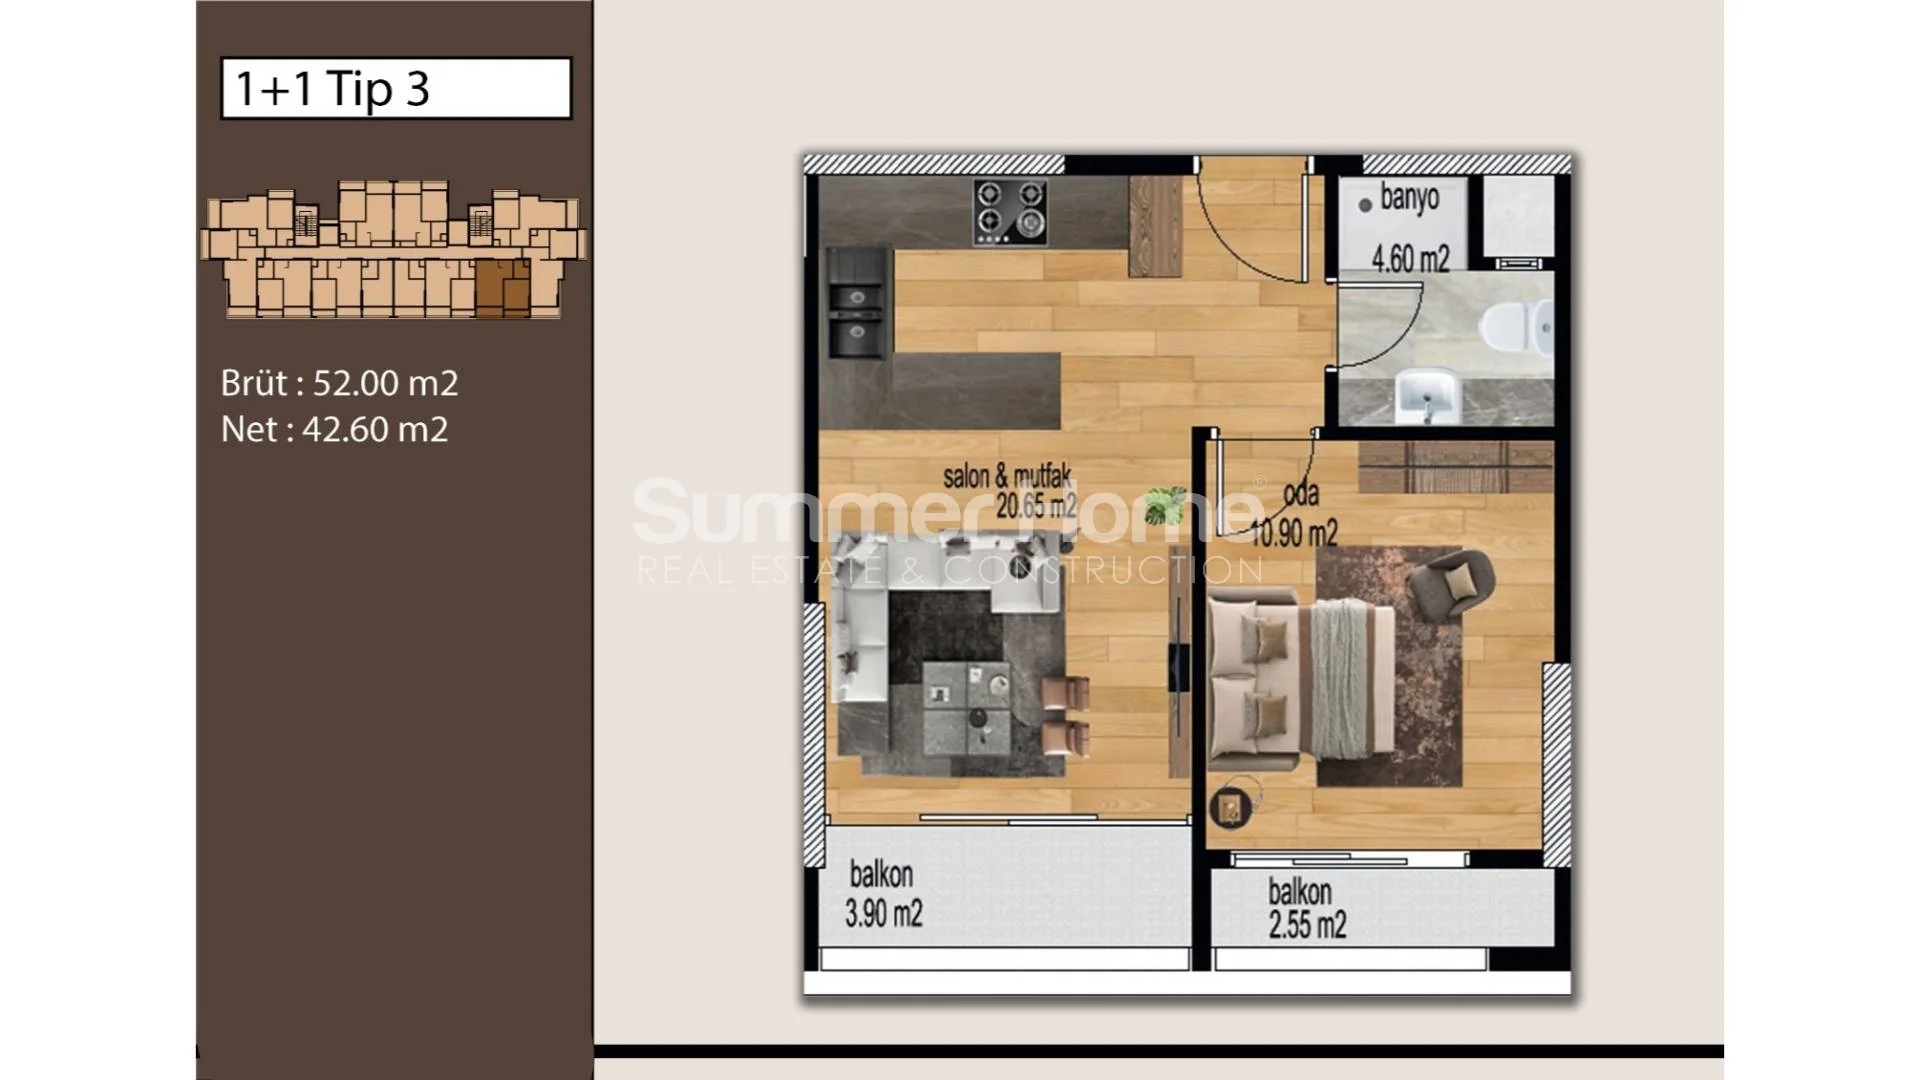 Mezitli, Mersin'de bulunan güzel modern daireler Plan - 16